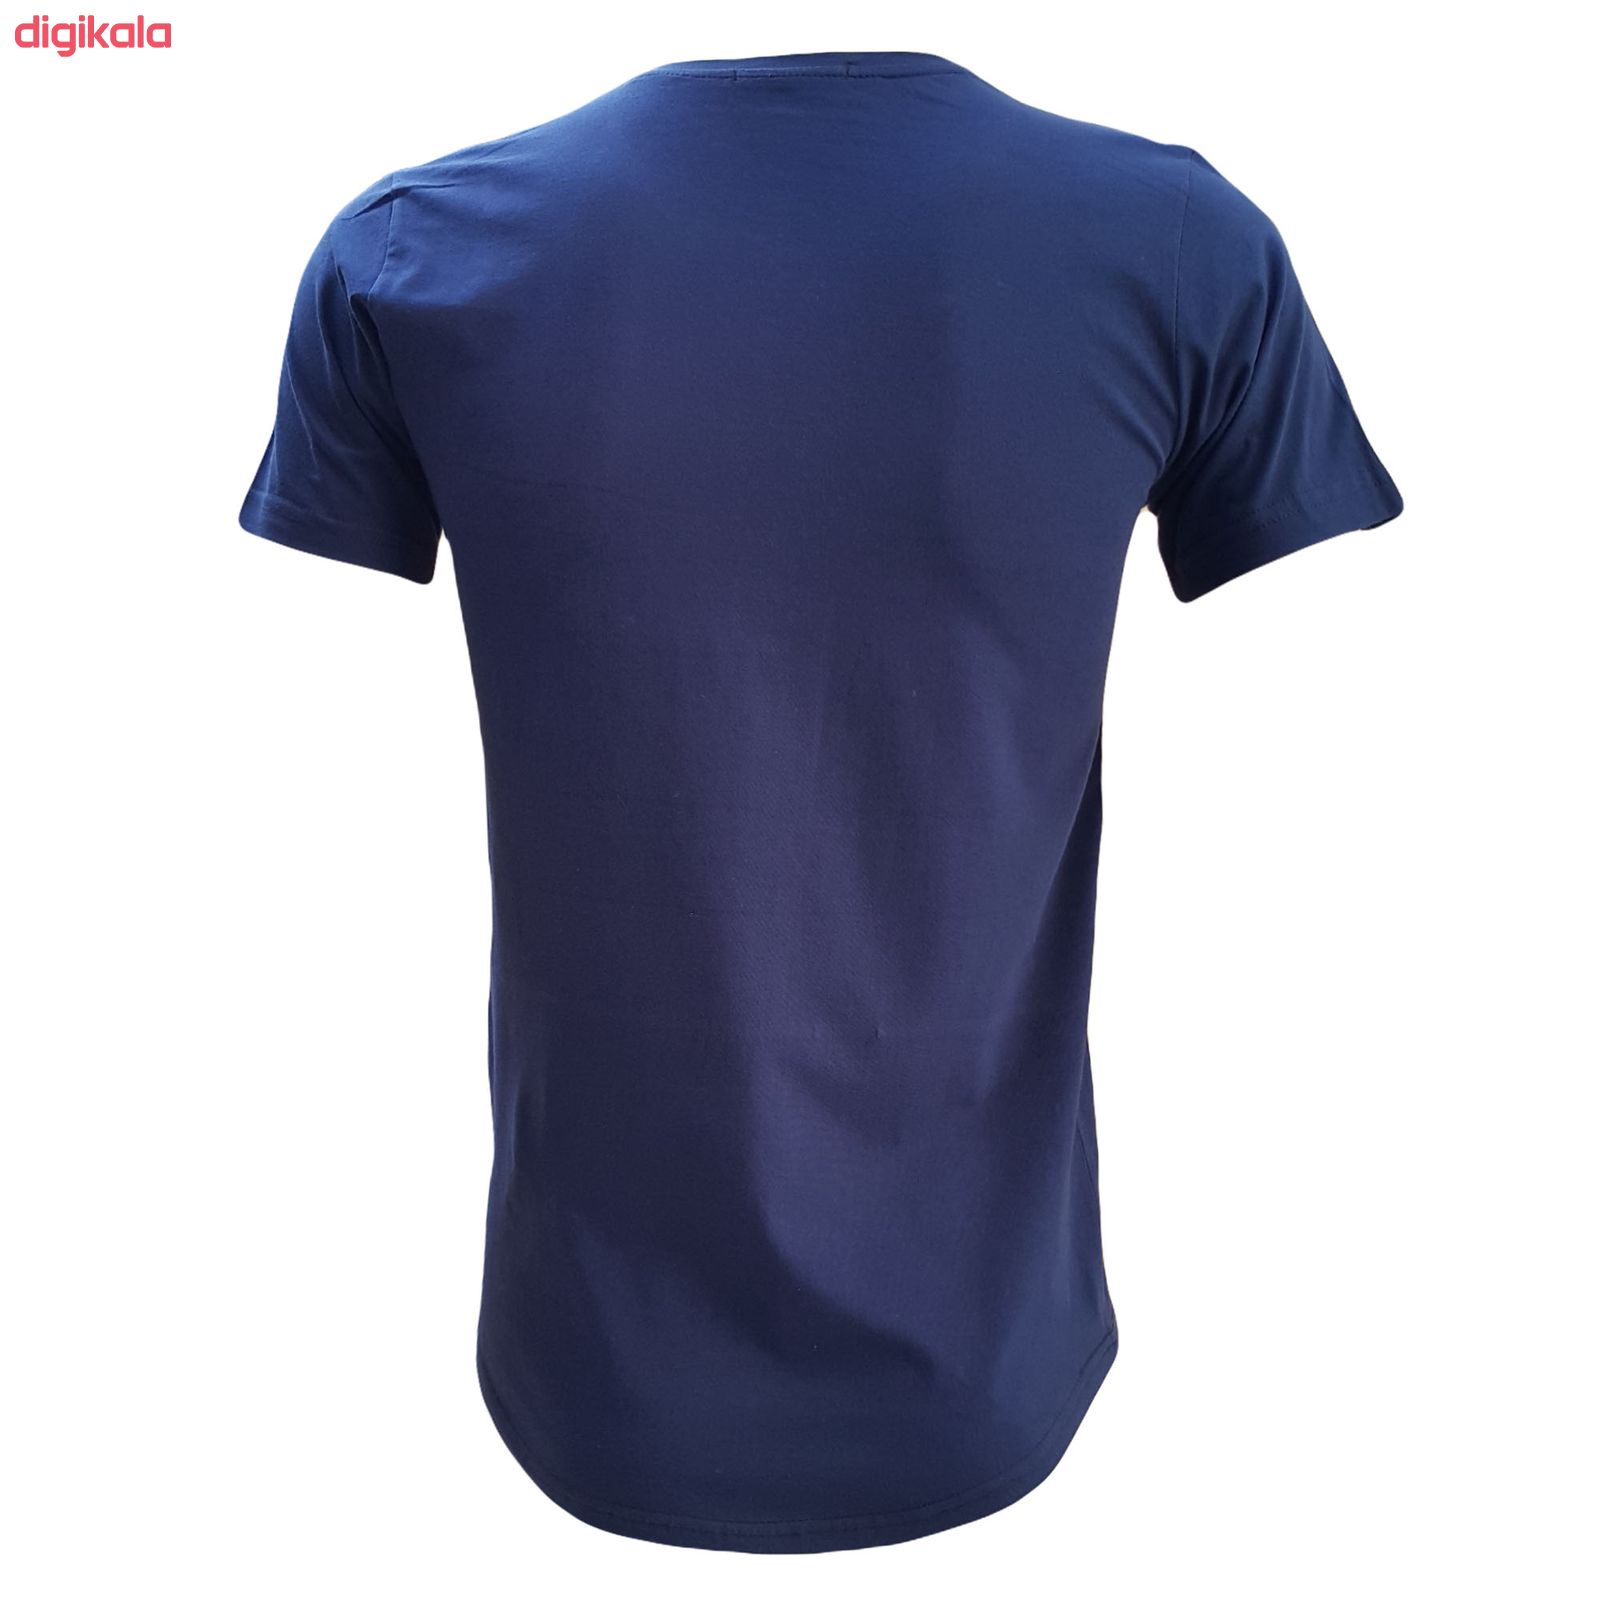  تی شرت آستین کوتاه مردانه طرح رئال کد R711G رنگ سرمه ای